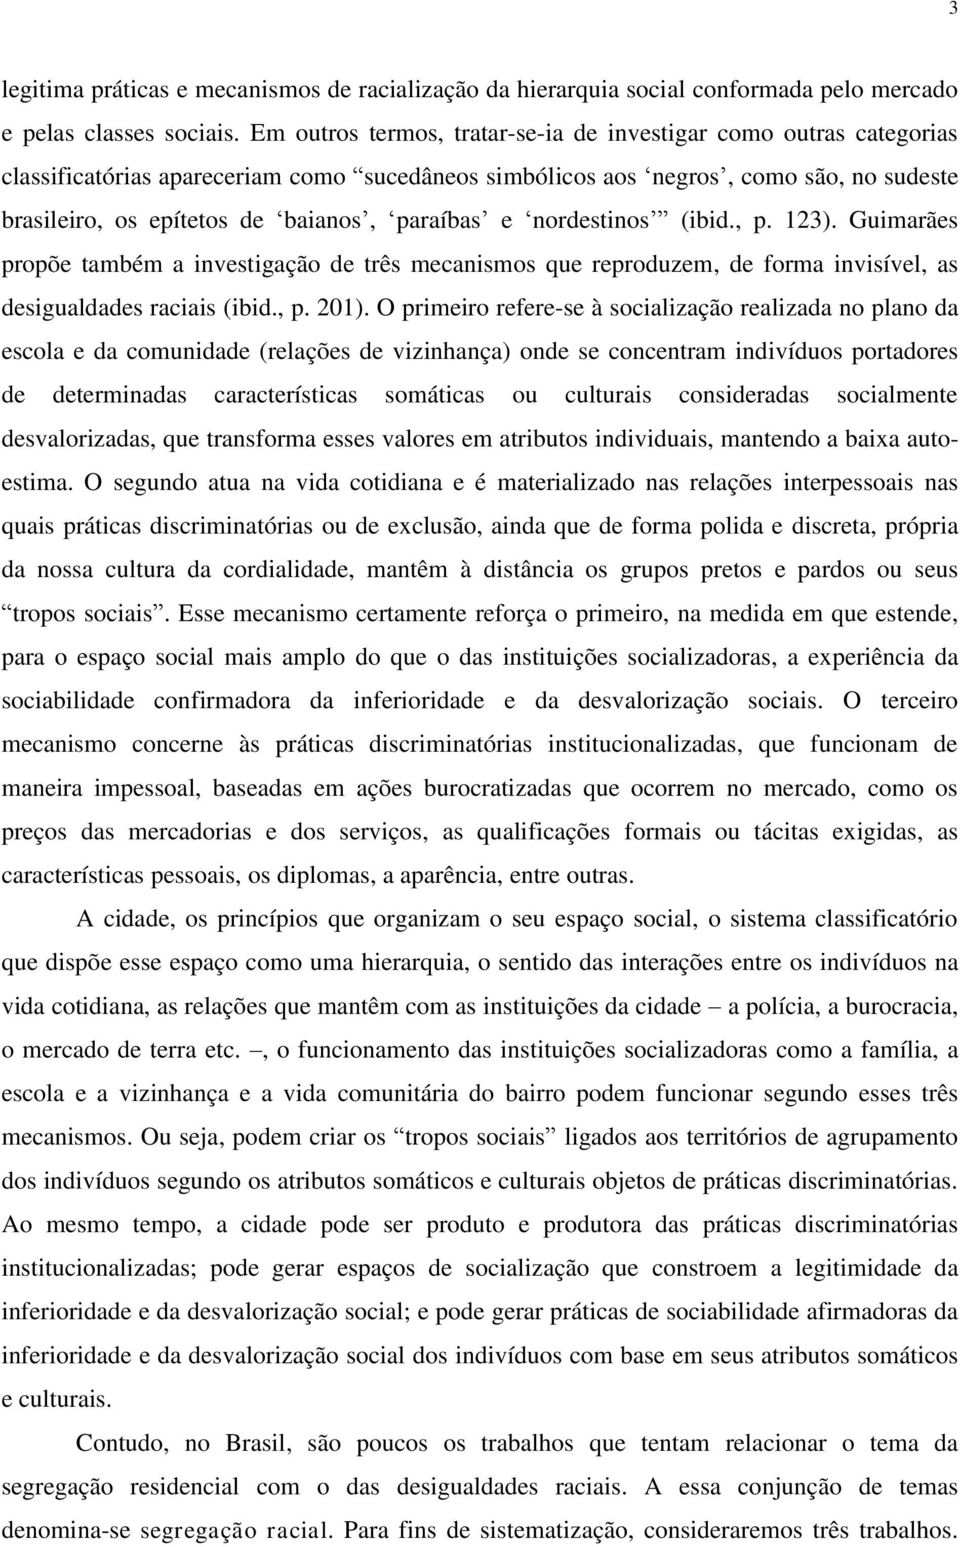 paraíbas e nordestinos (ibid., p. 123). Guimarães propõe também a investigação de três mecanismos que reproduzem, de forma invisível, as desigualdades raciais (ibid., p. 201).